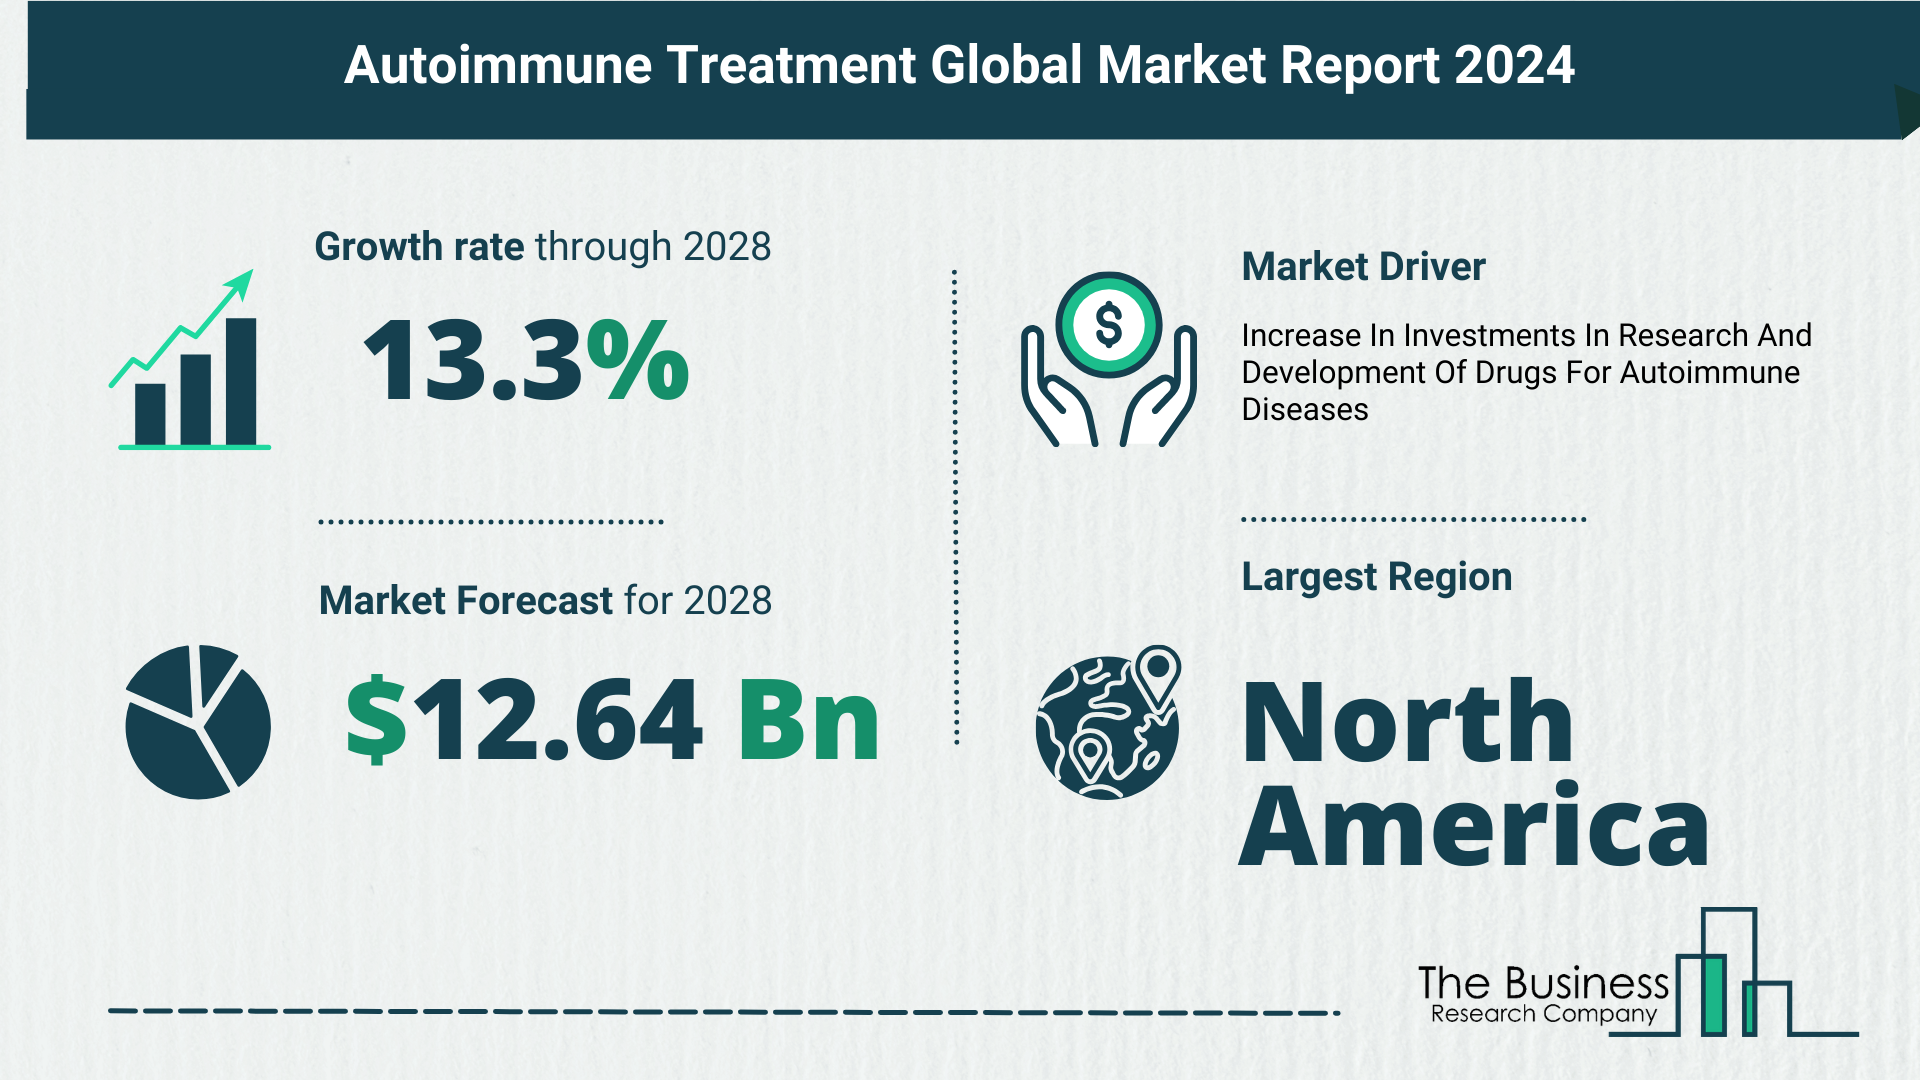 Global Autoimmune Treatment Market